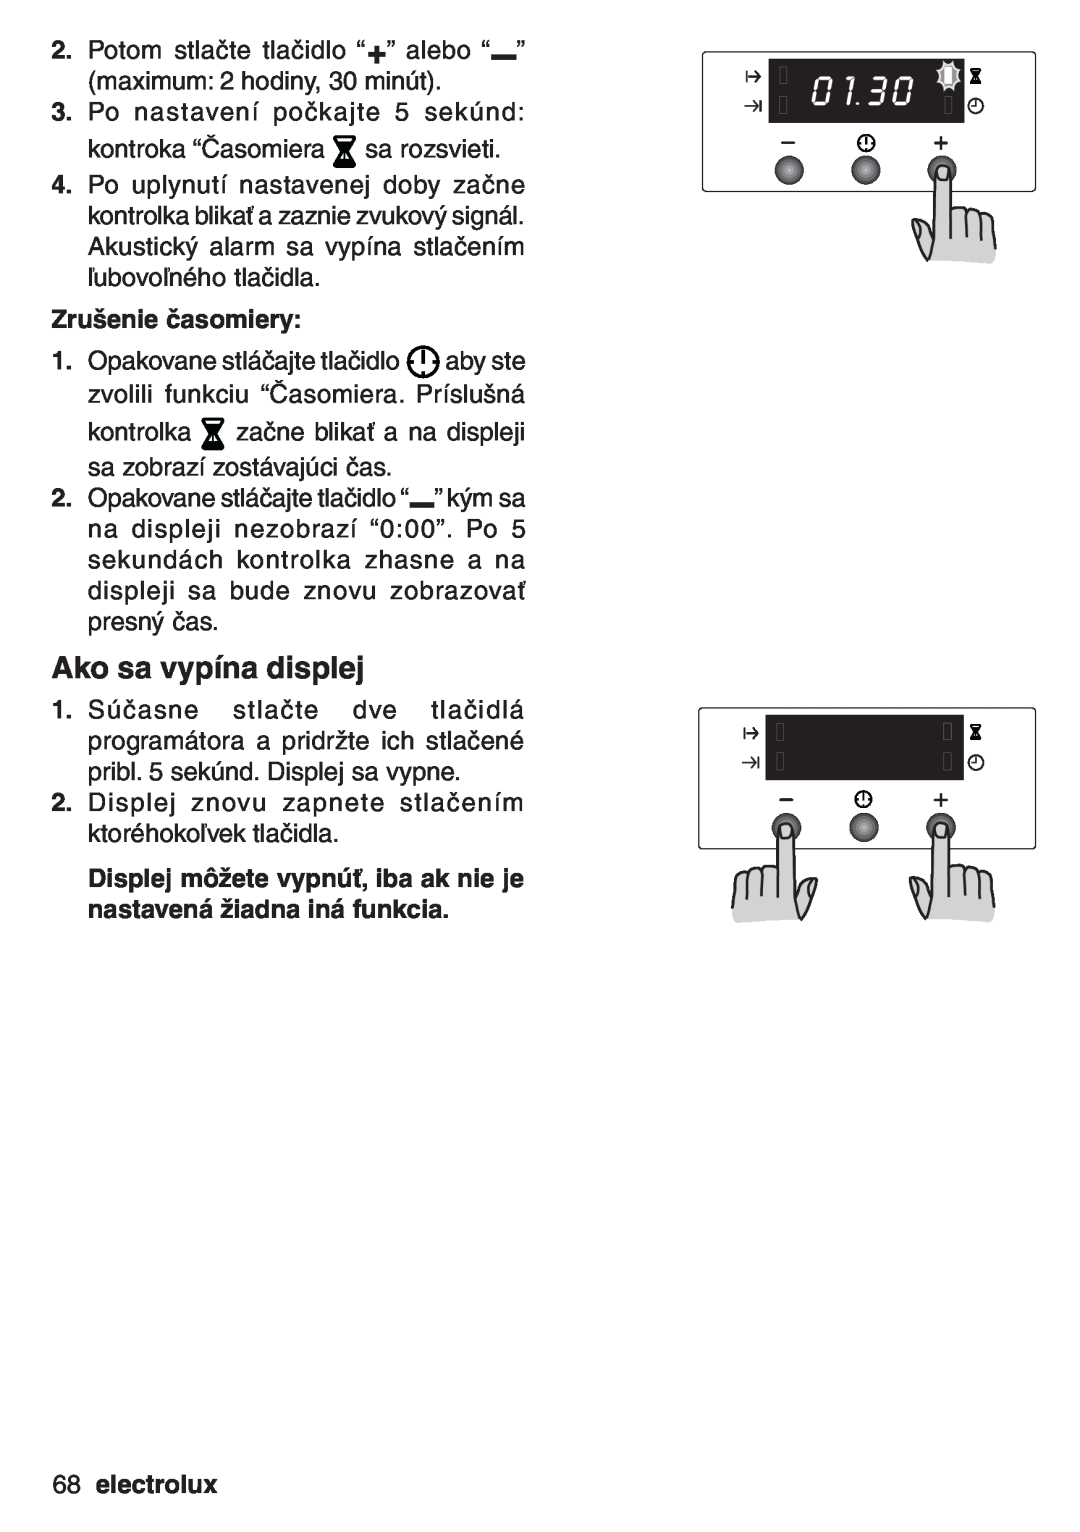 Electrolux EOB 53003 user manual Ako sa vypína displej, Zrušenie časomiery, electrolux 